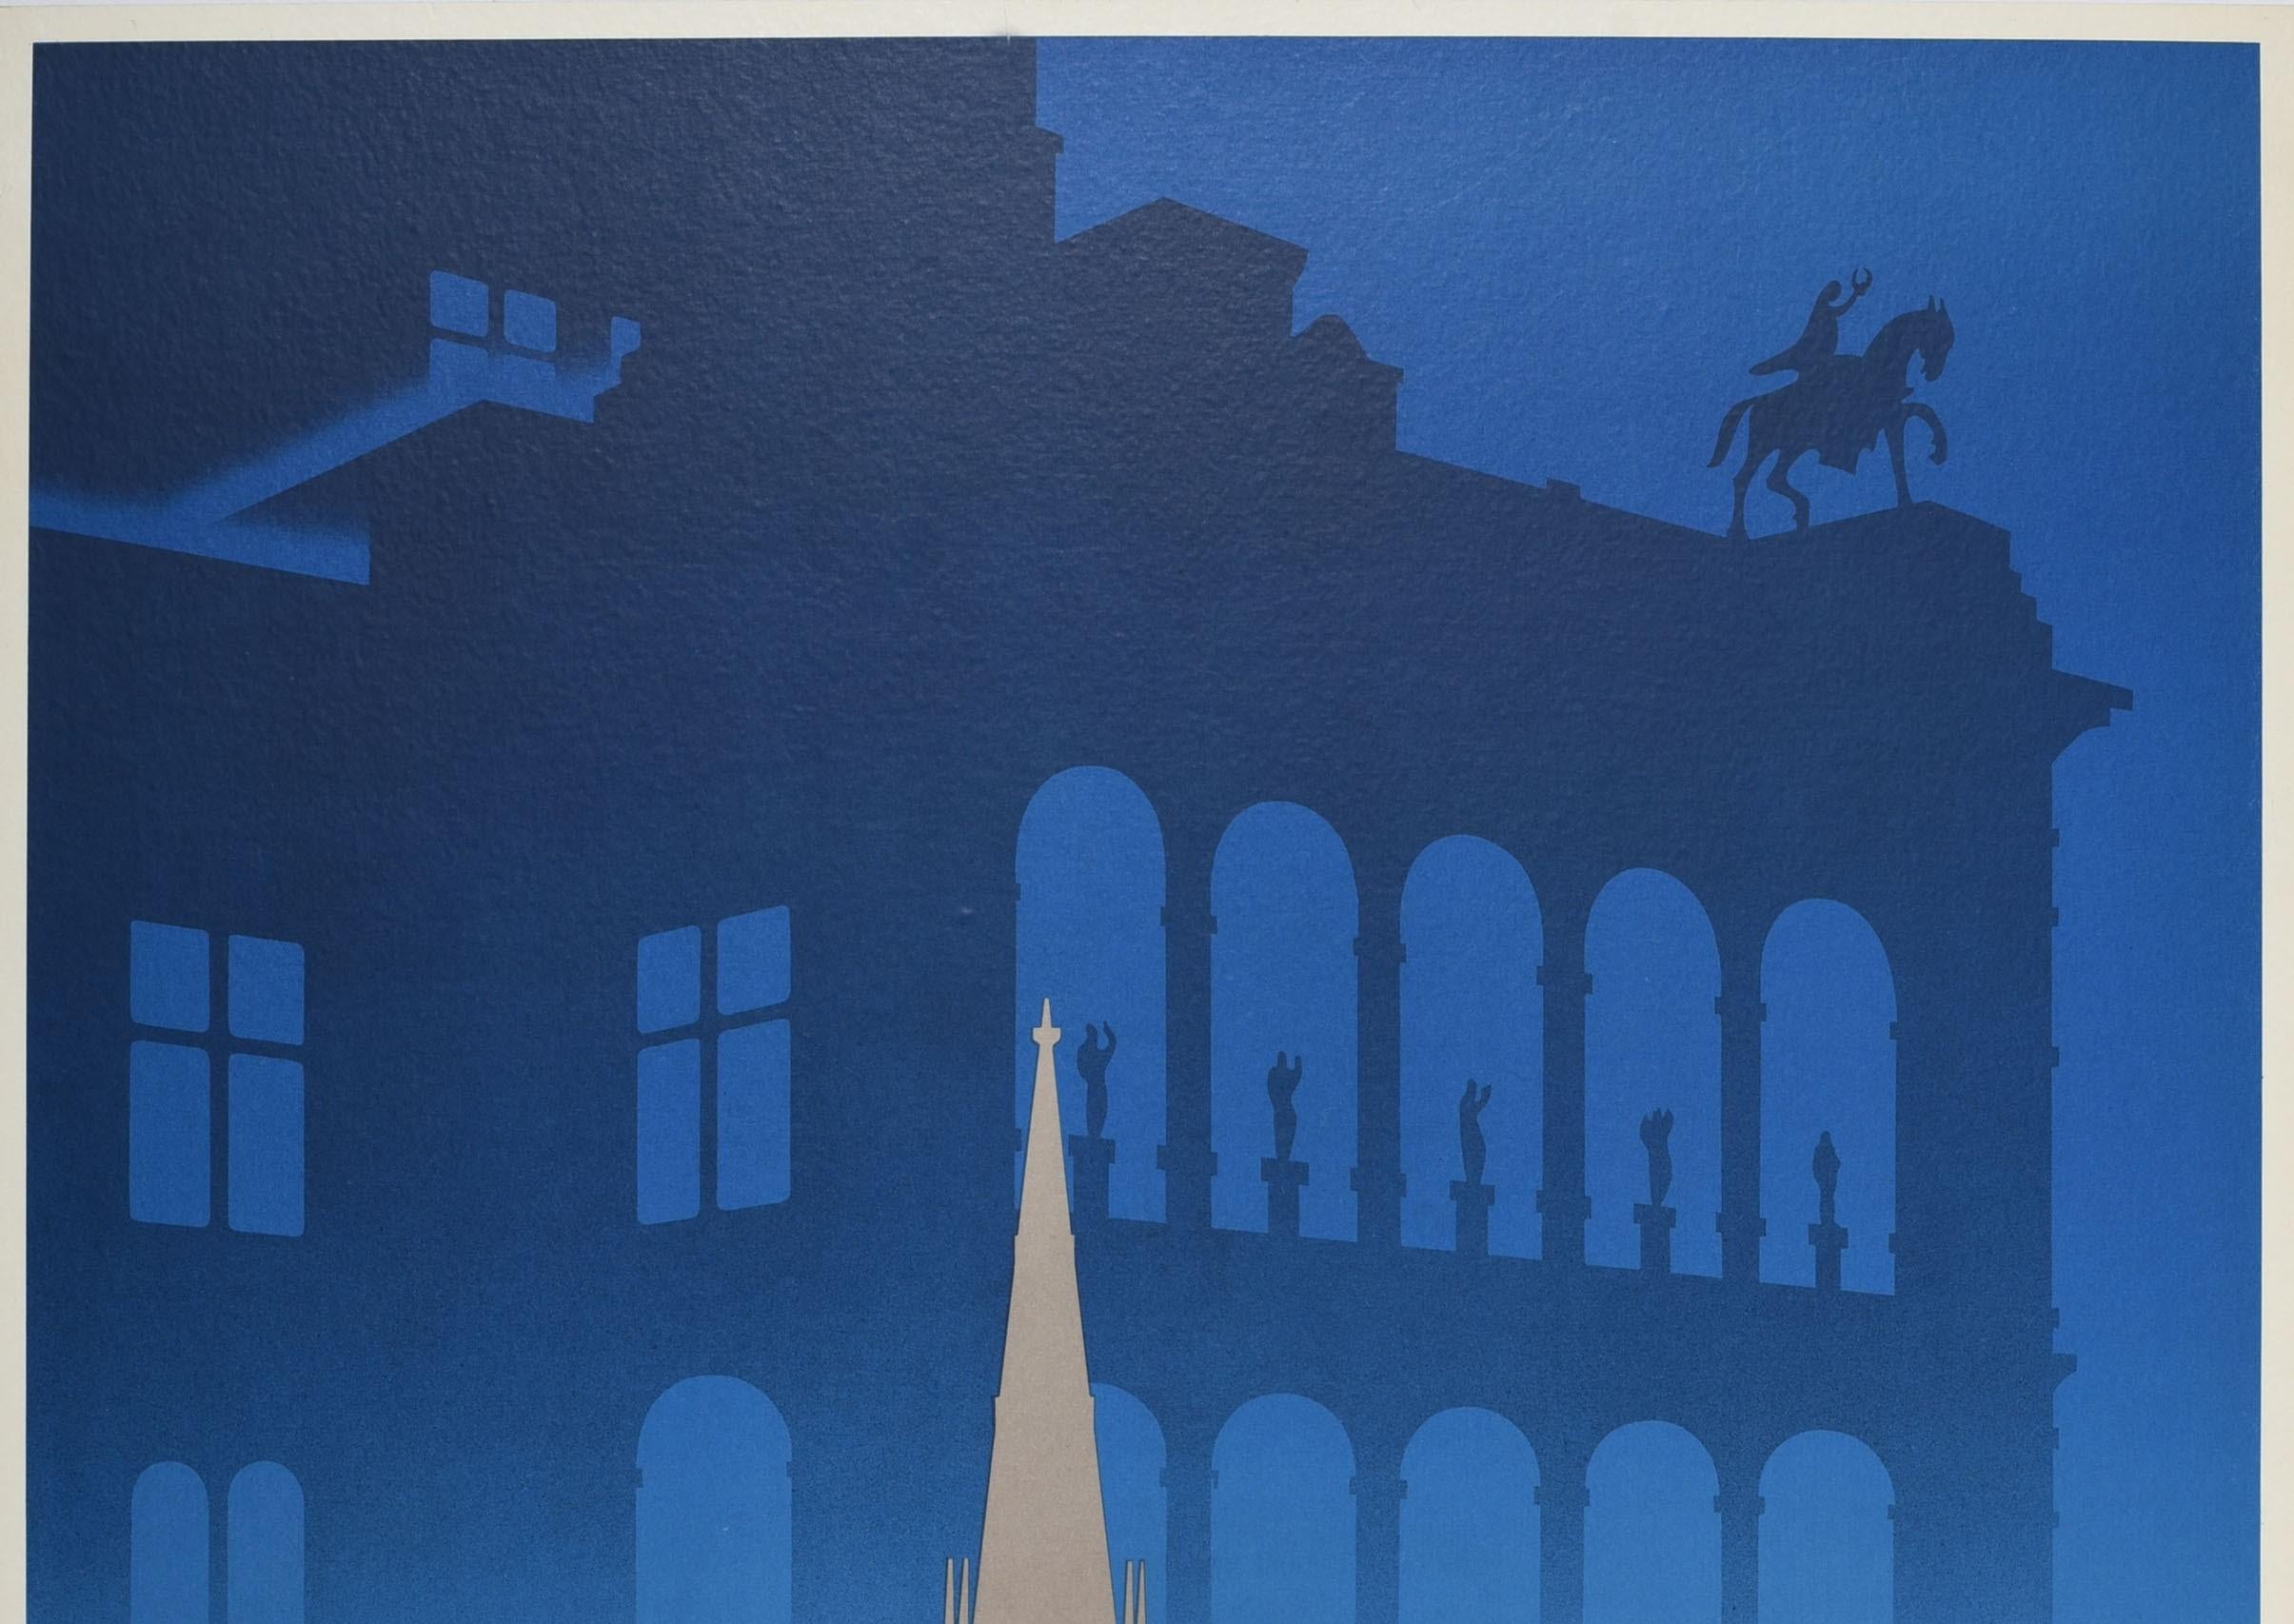 Affiche de voyage vintage originale - To Vienna by train and post / Nach Wien Mit Bahn Und Post - présentant un superbe dessin montrant la silhouette d'un bâtiment historique et la statue d'une personne à cheval sur un fond de ciel nocturne bleu